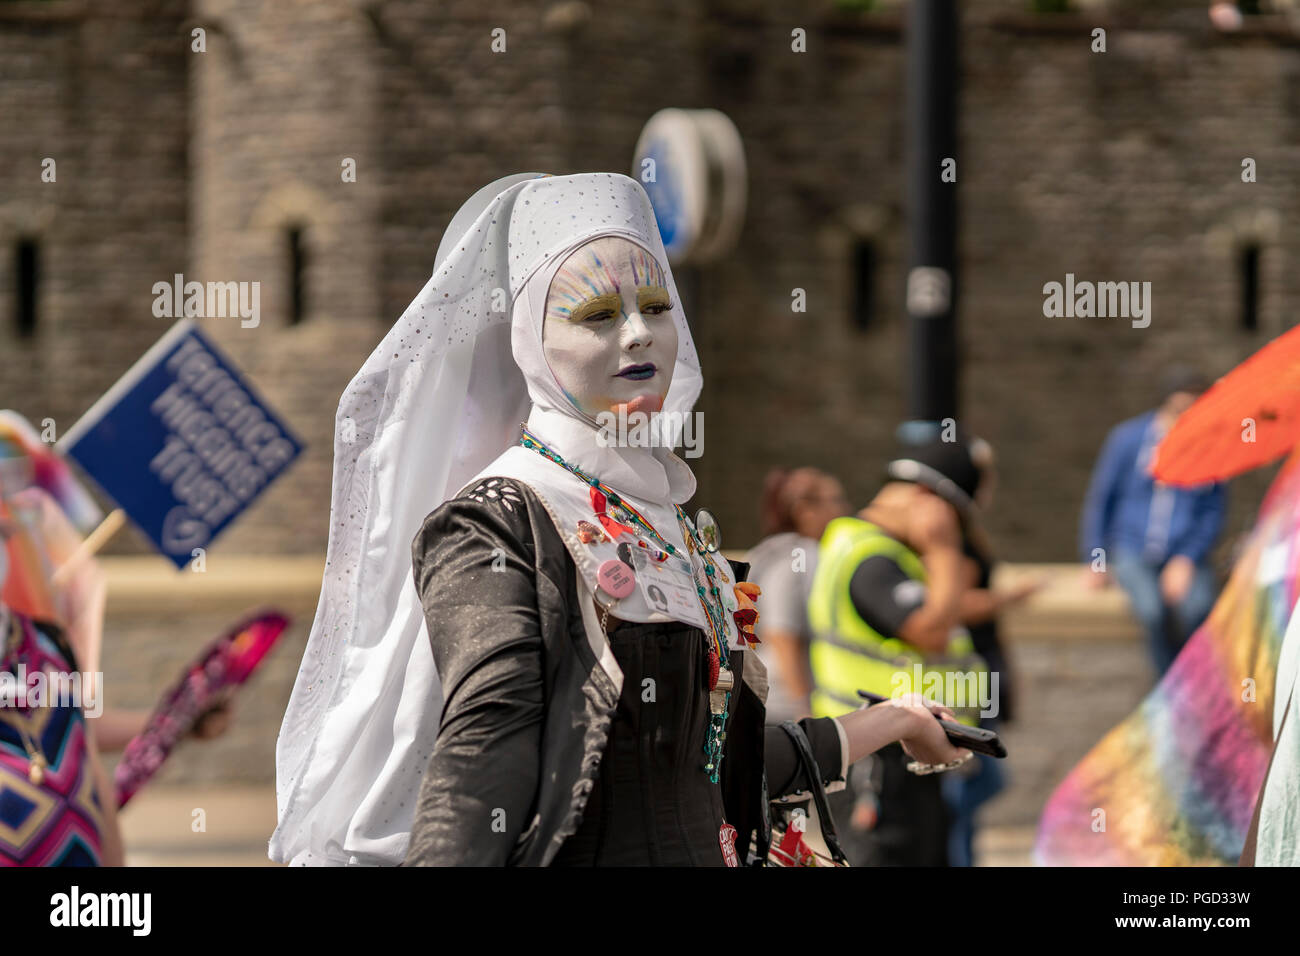 Cardiff, Pays de Galles, le 25 août 2018 : Drag Queens participer à l'assemblée annuelle Pride Parade Cymru à Cardiff au Pays de Galles le 25 août 2018 ©Daniel Damaschin Crédit : Daniel Damaschin/Alamy Live News Banque D'Images